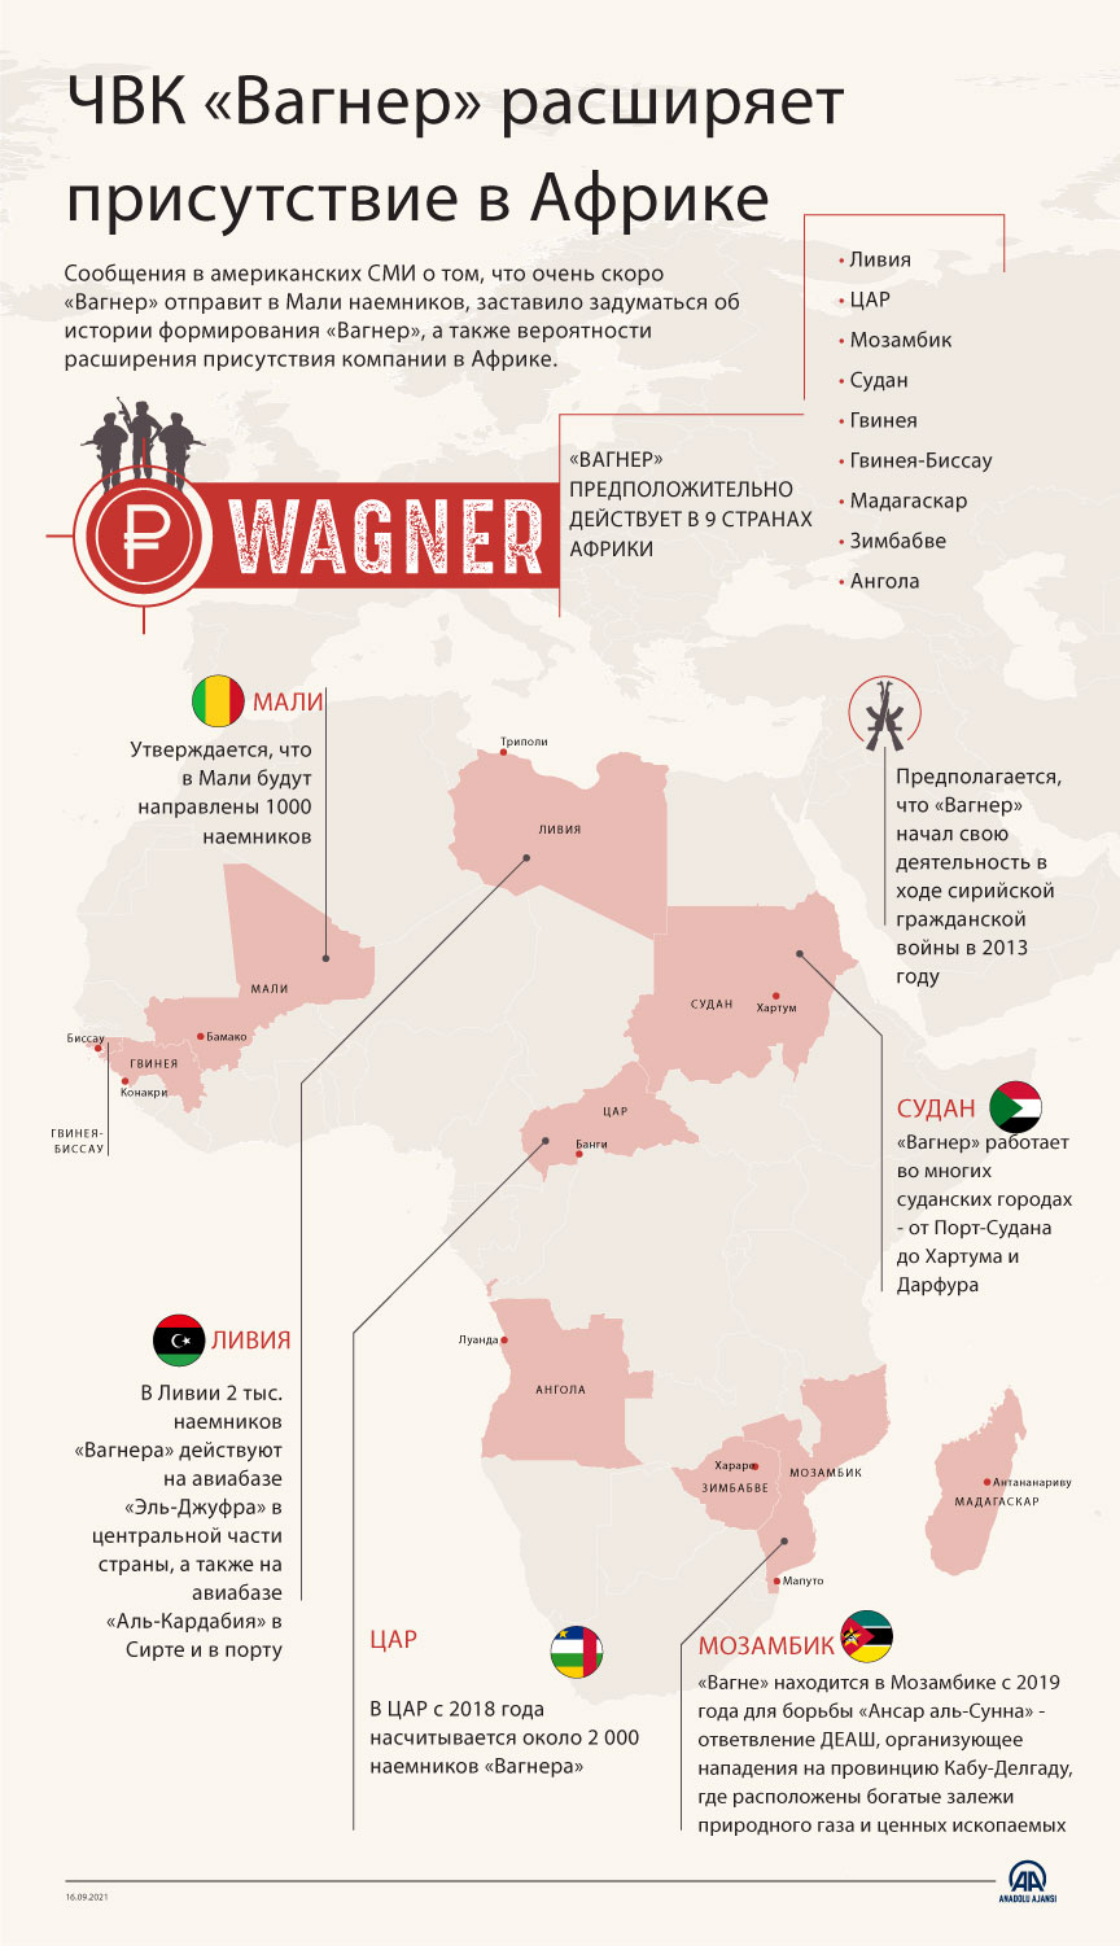 ЧВК «Вагнер» расширяет присутствие в Африке